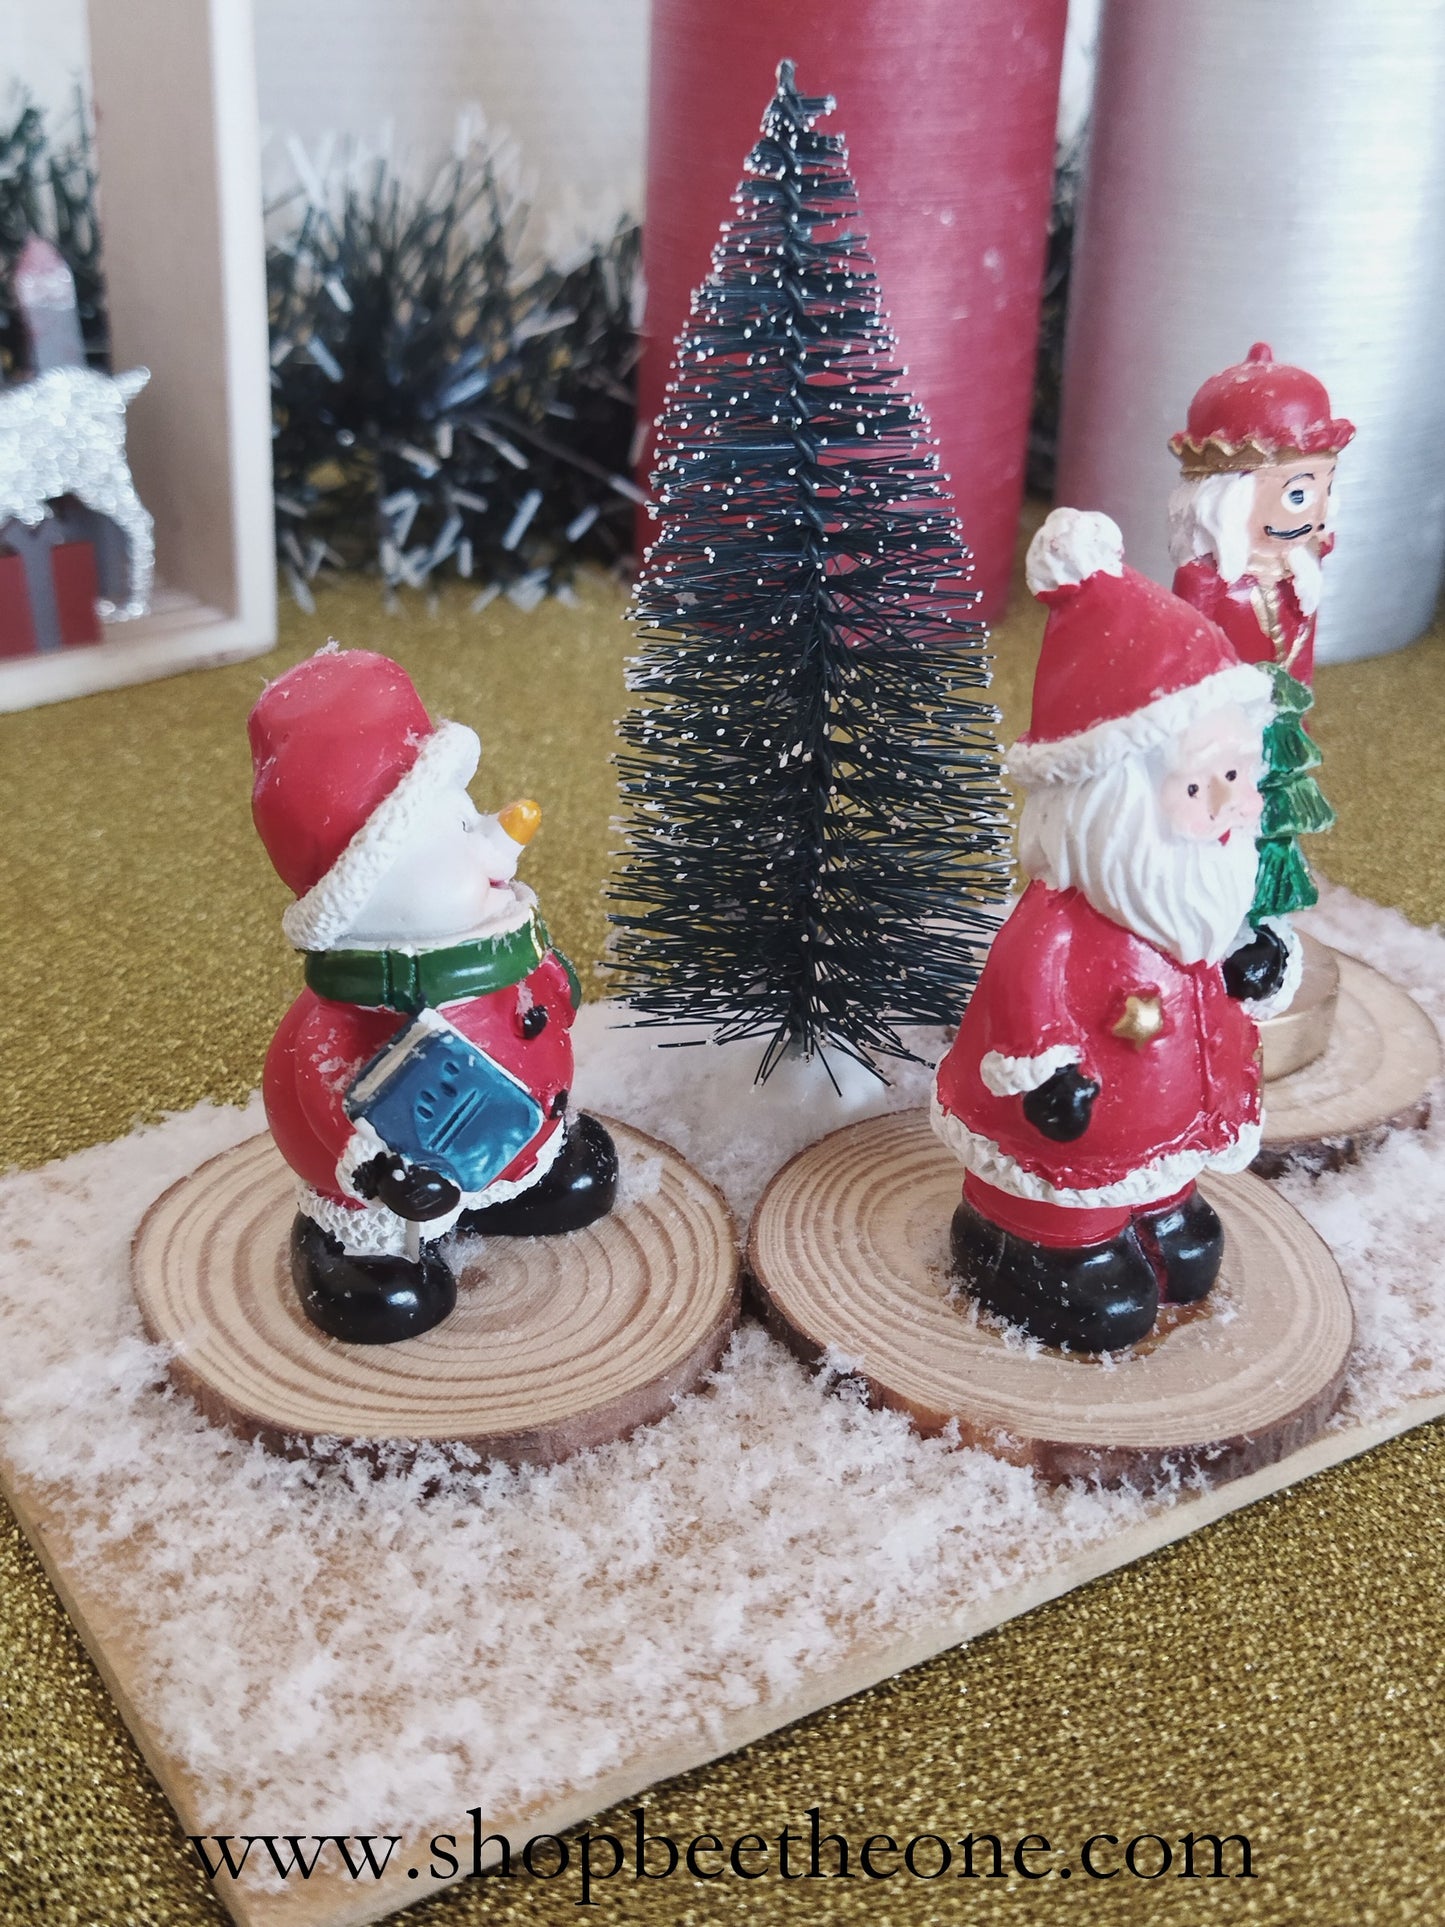 Décoration - Scène avec figurines de Noël, sapin et neige, sur planche en bois